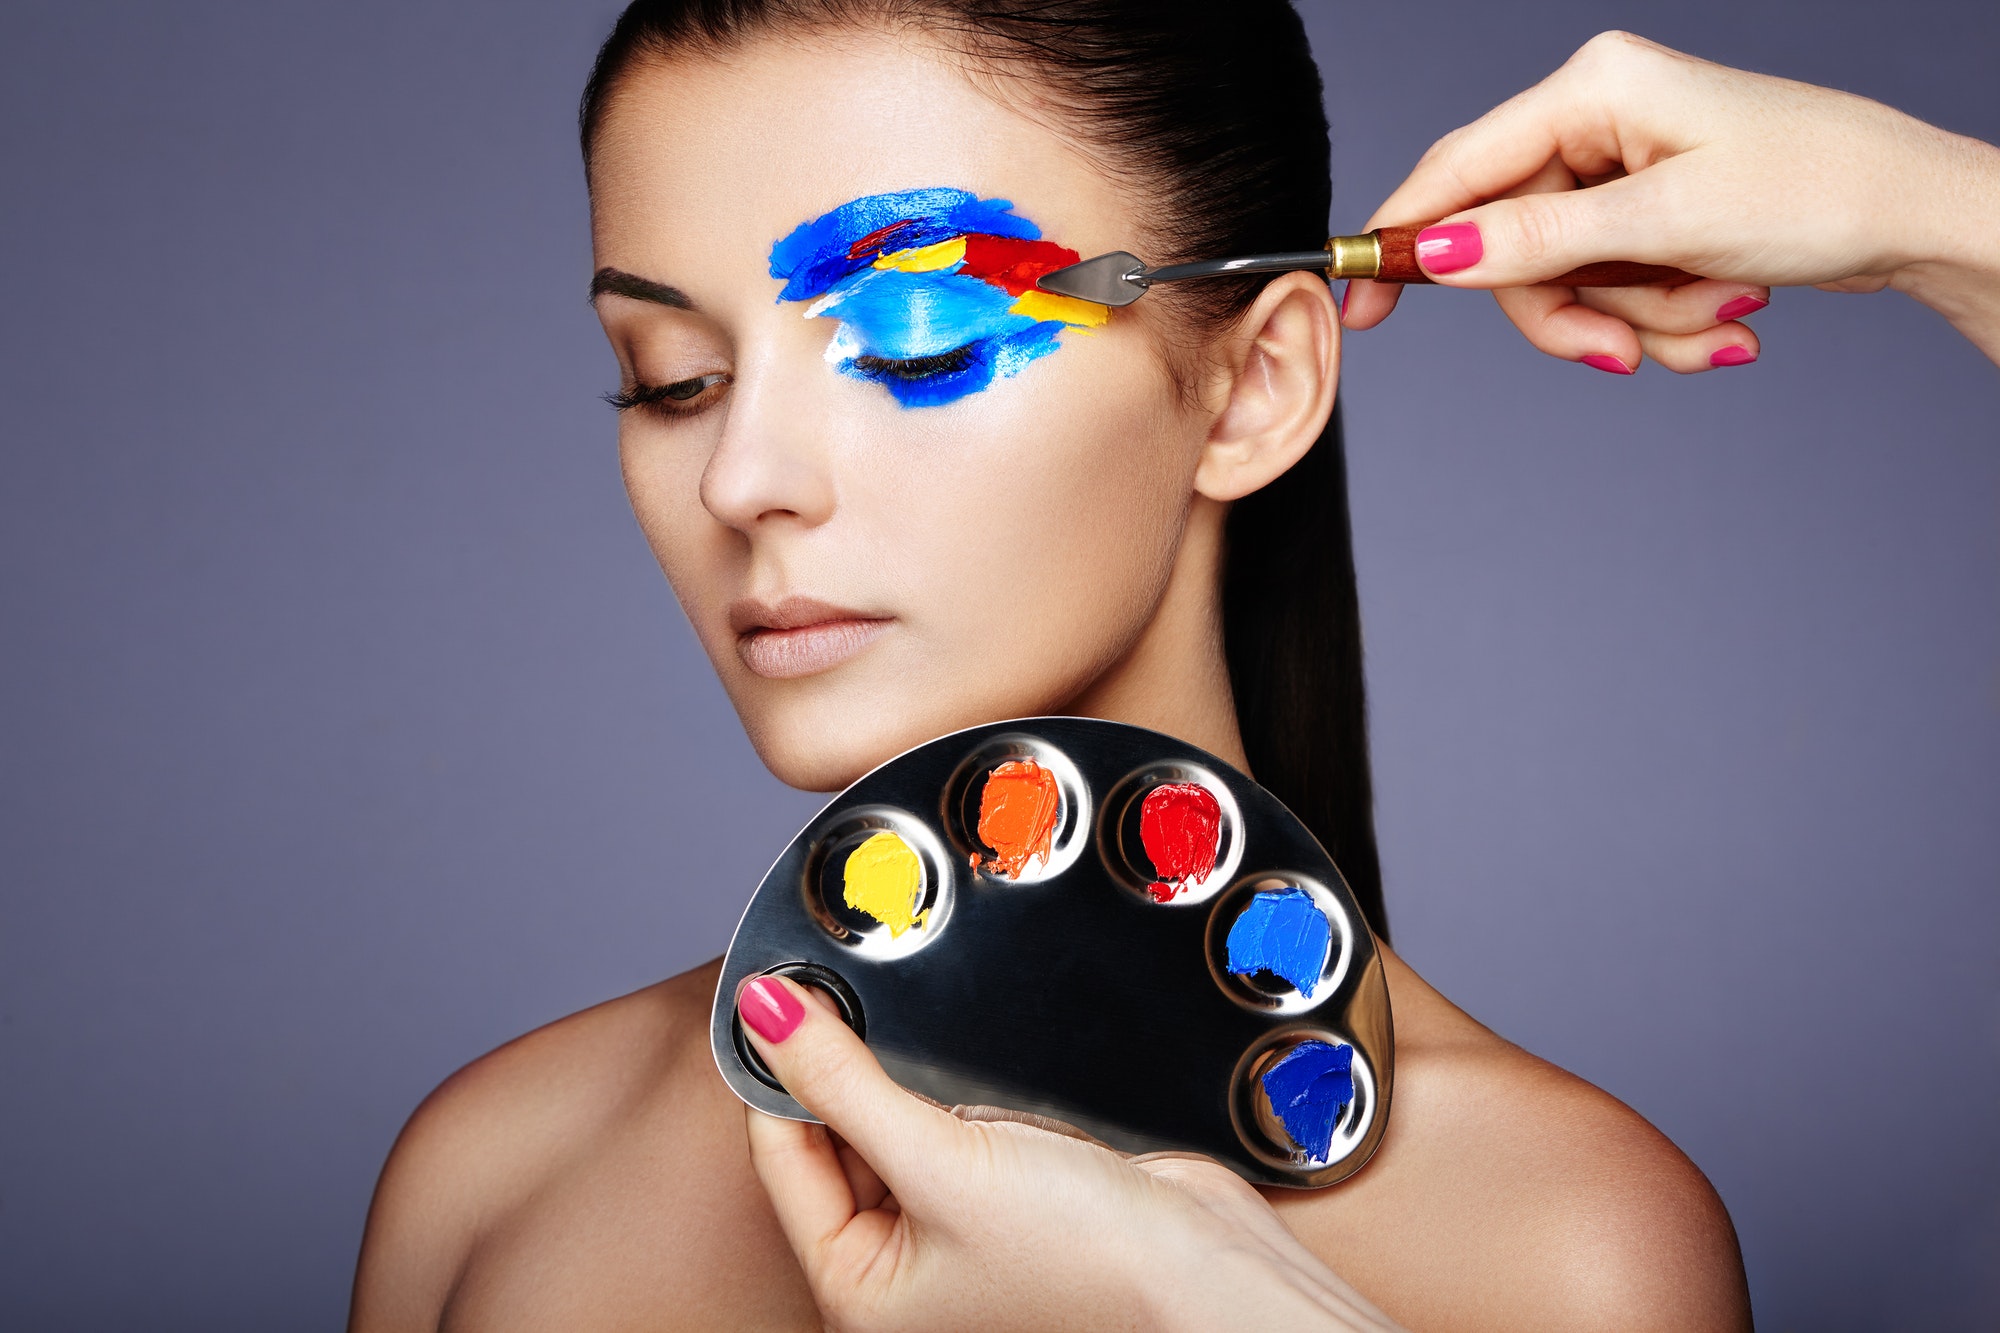 Makeup artist applies colorful makeup